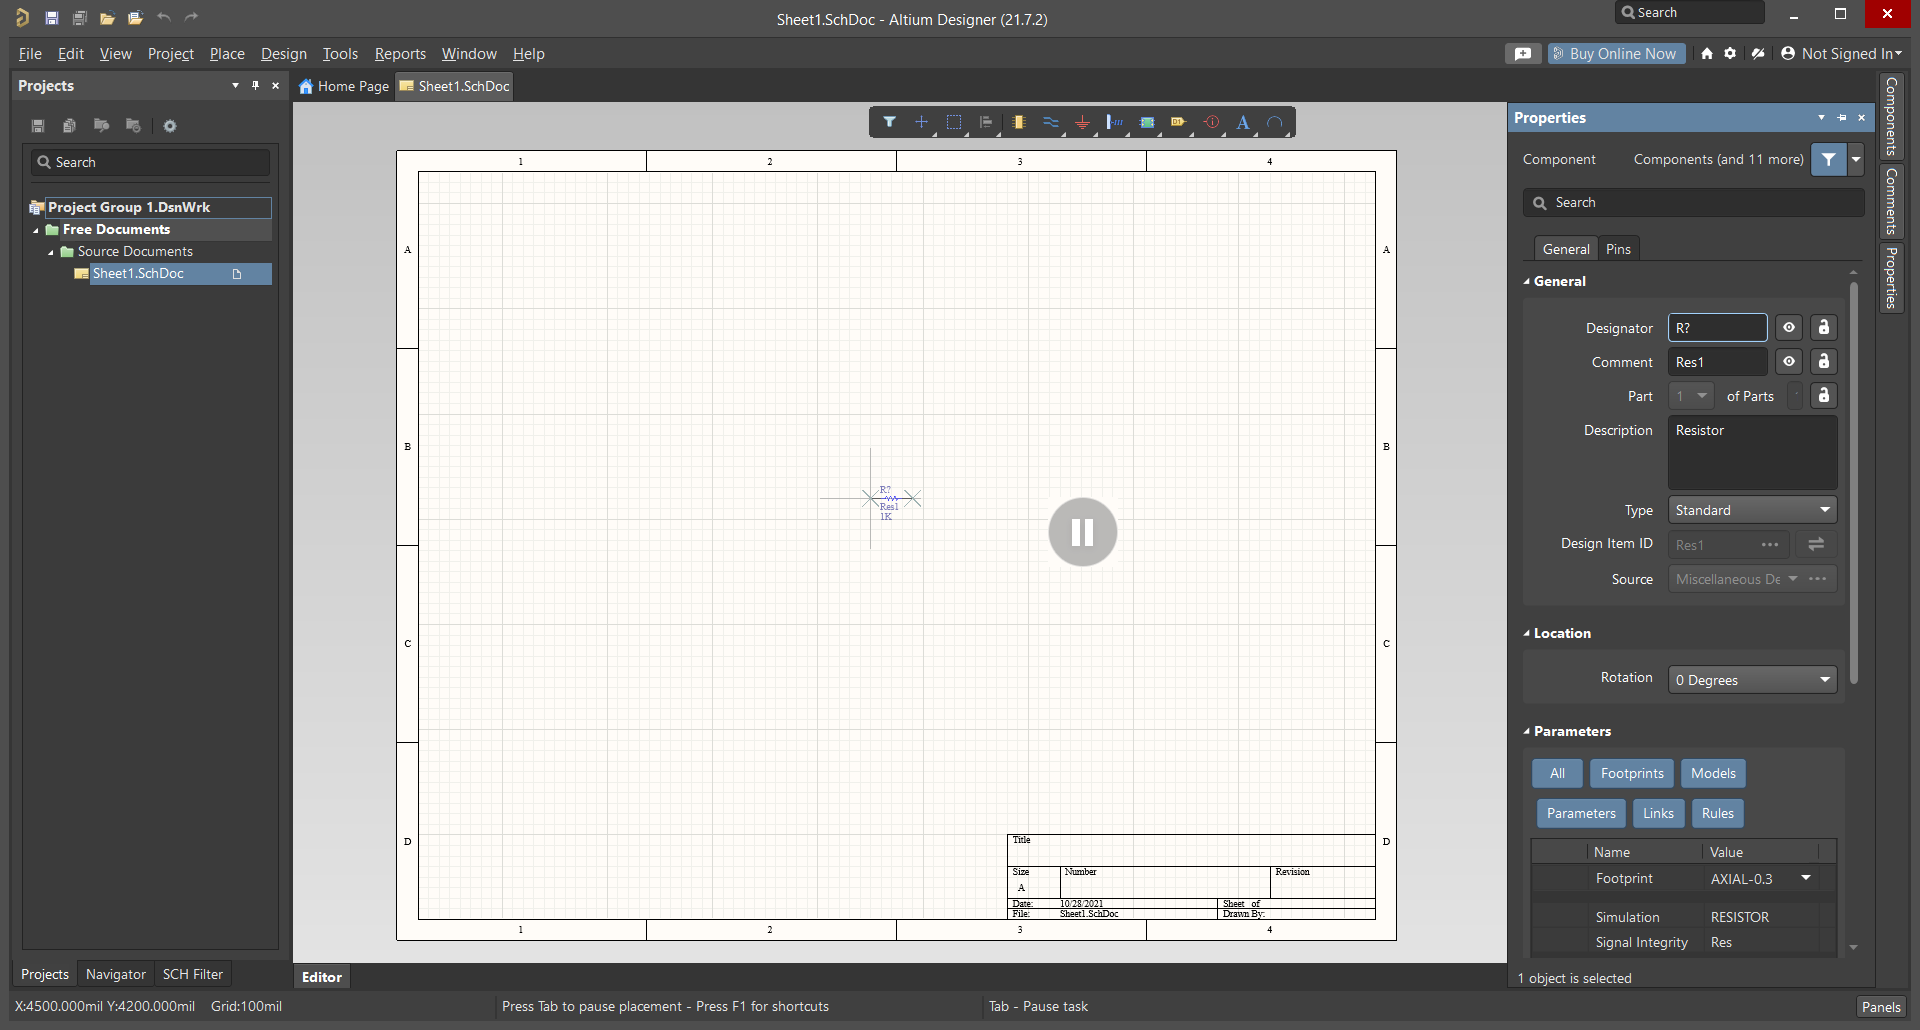 مراحل طراحی نقشه شماتیک در نرم افزار آلتیوم دیزاینر - دیجی اسپارک